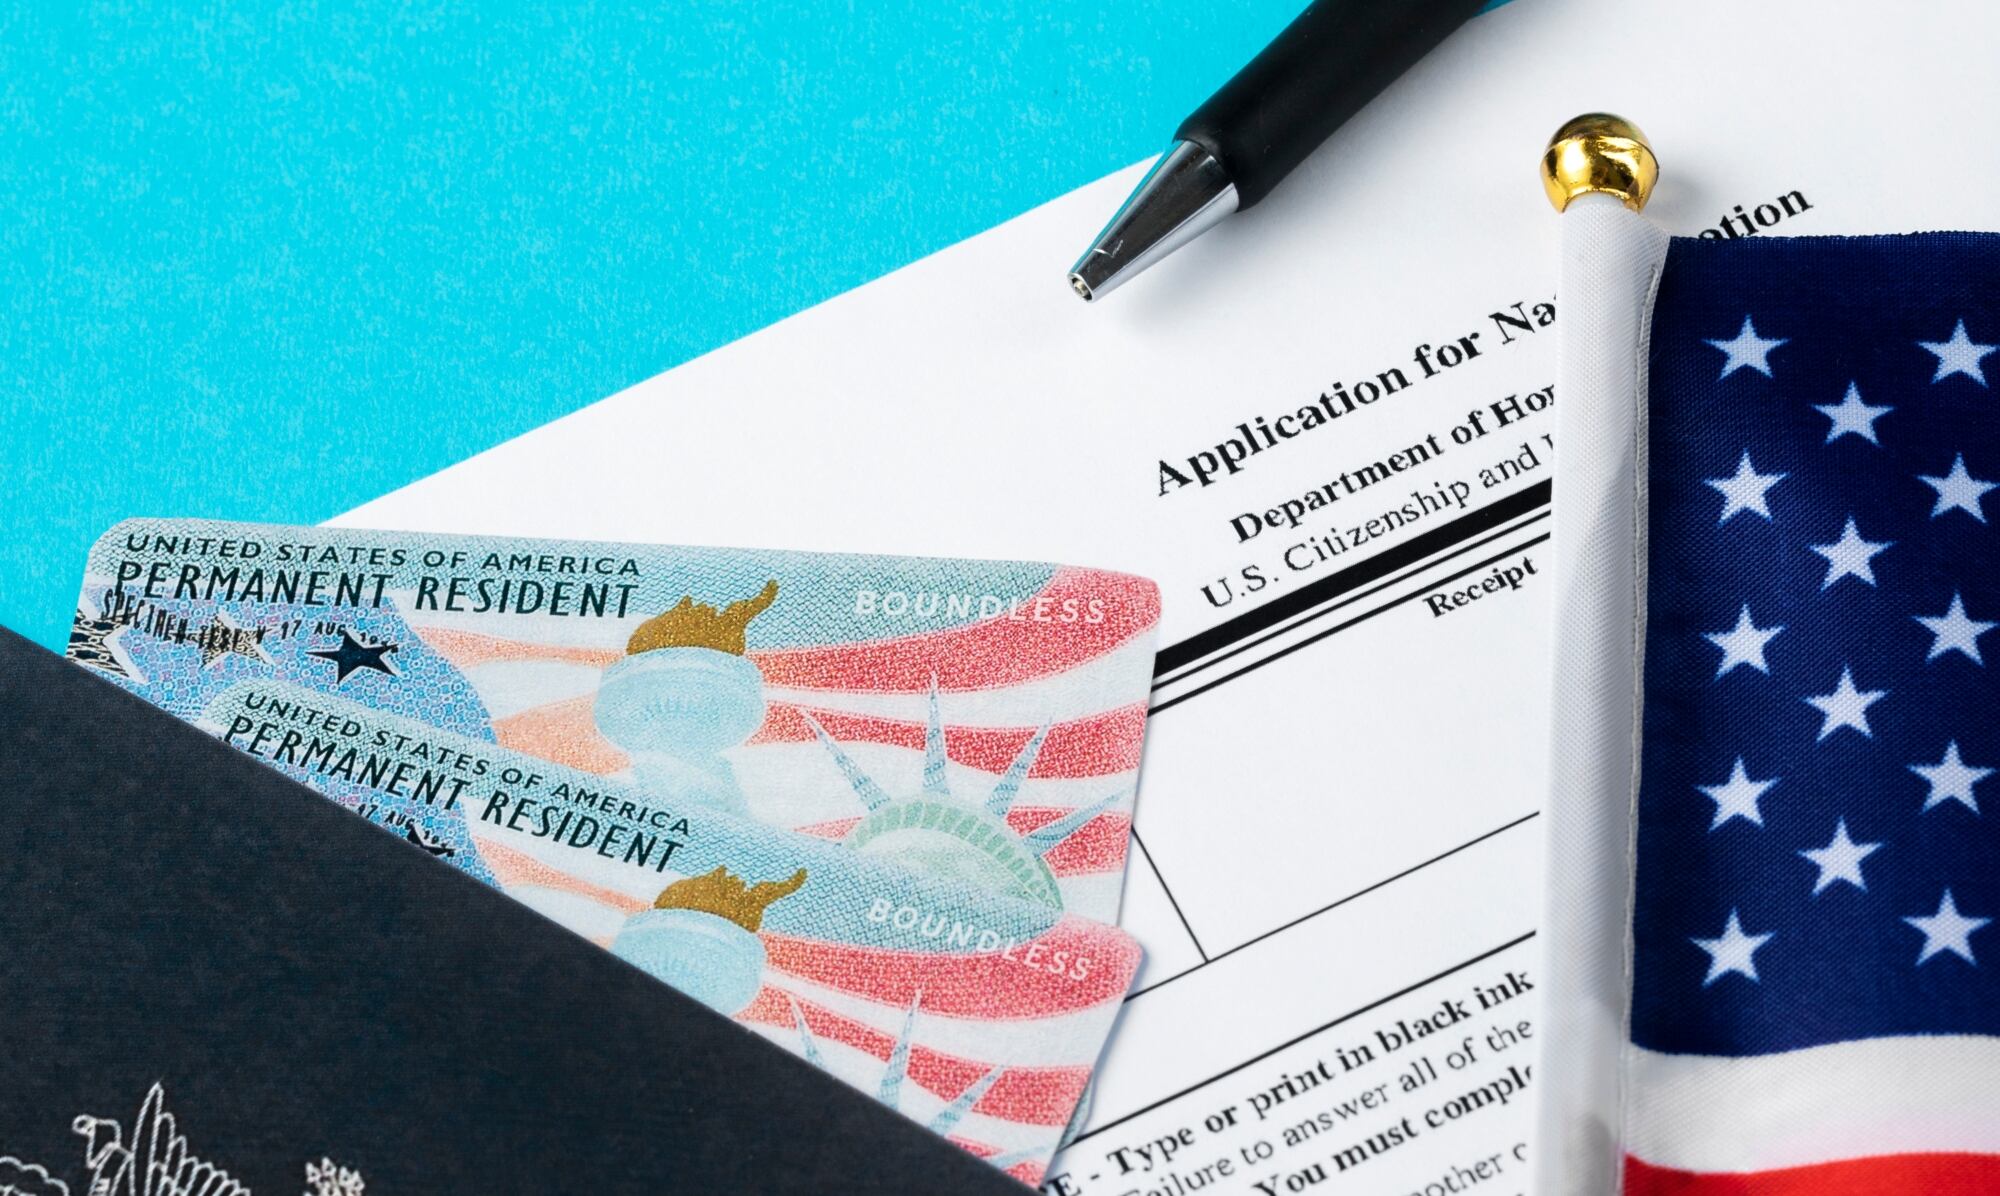 Al presentar una solicitud para la residencia permanente o ajustar estatus, normalmente el solicitante debe someterse a un examen médico de inmigración